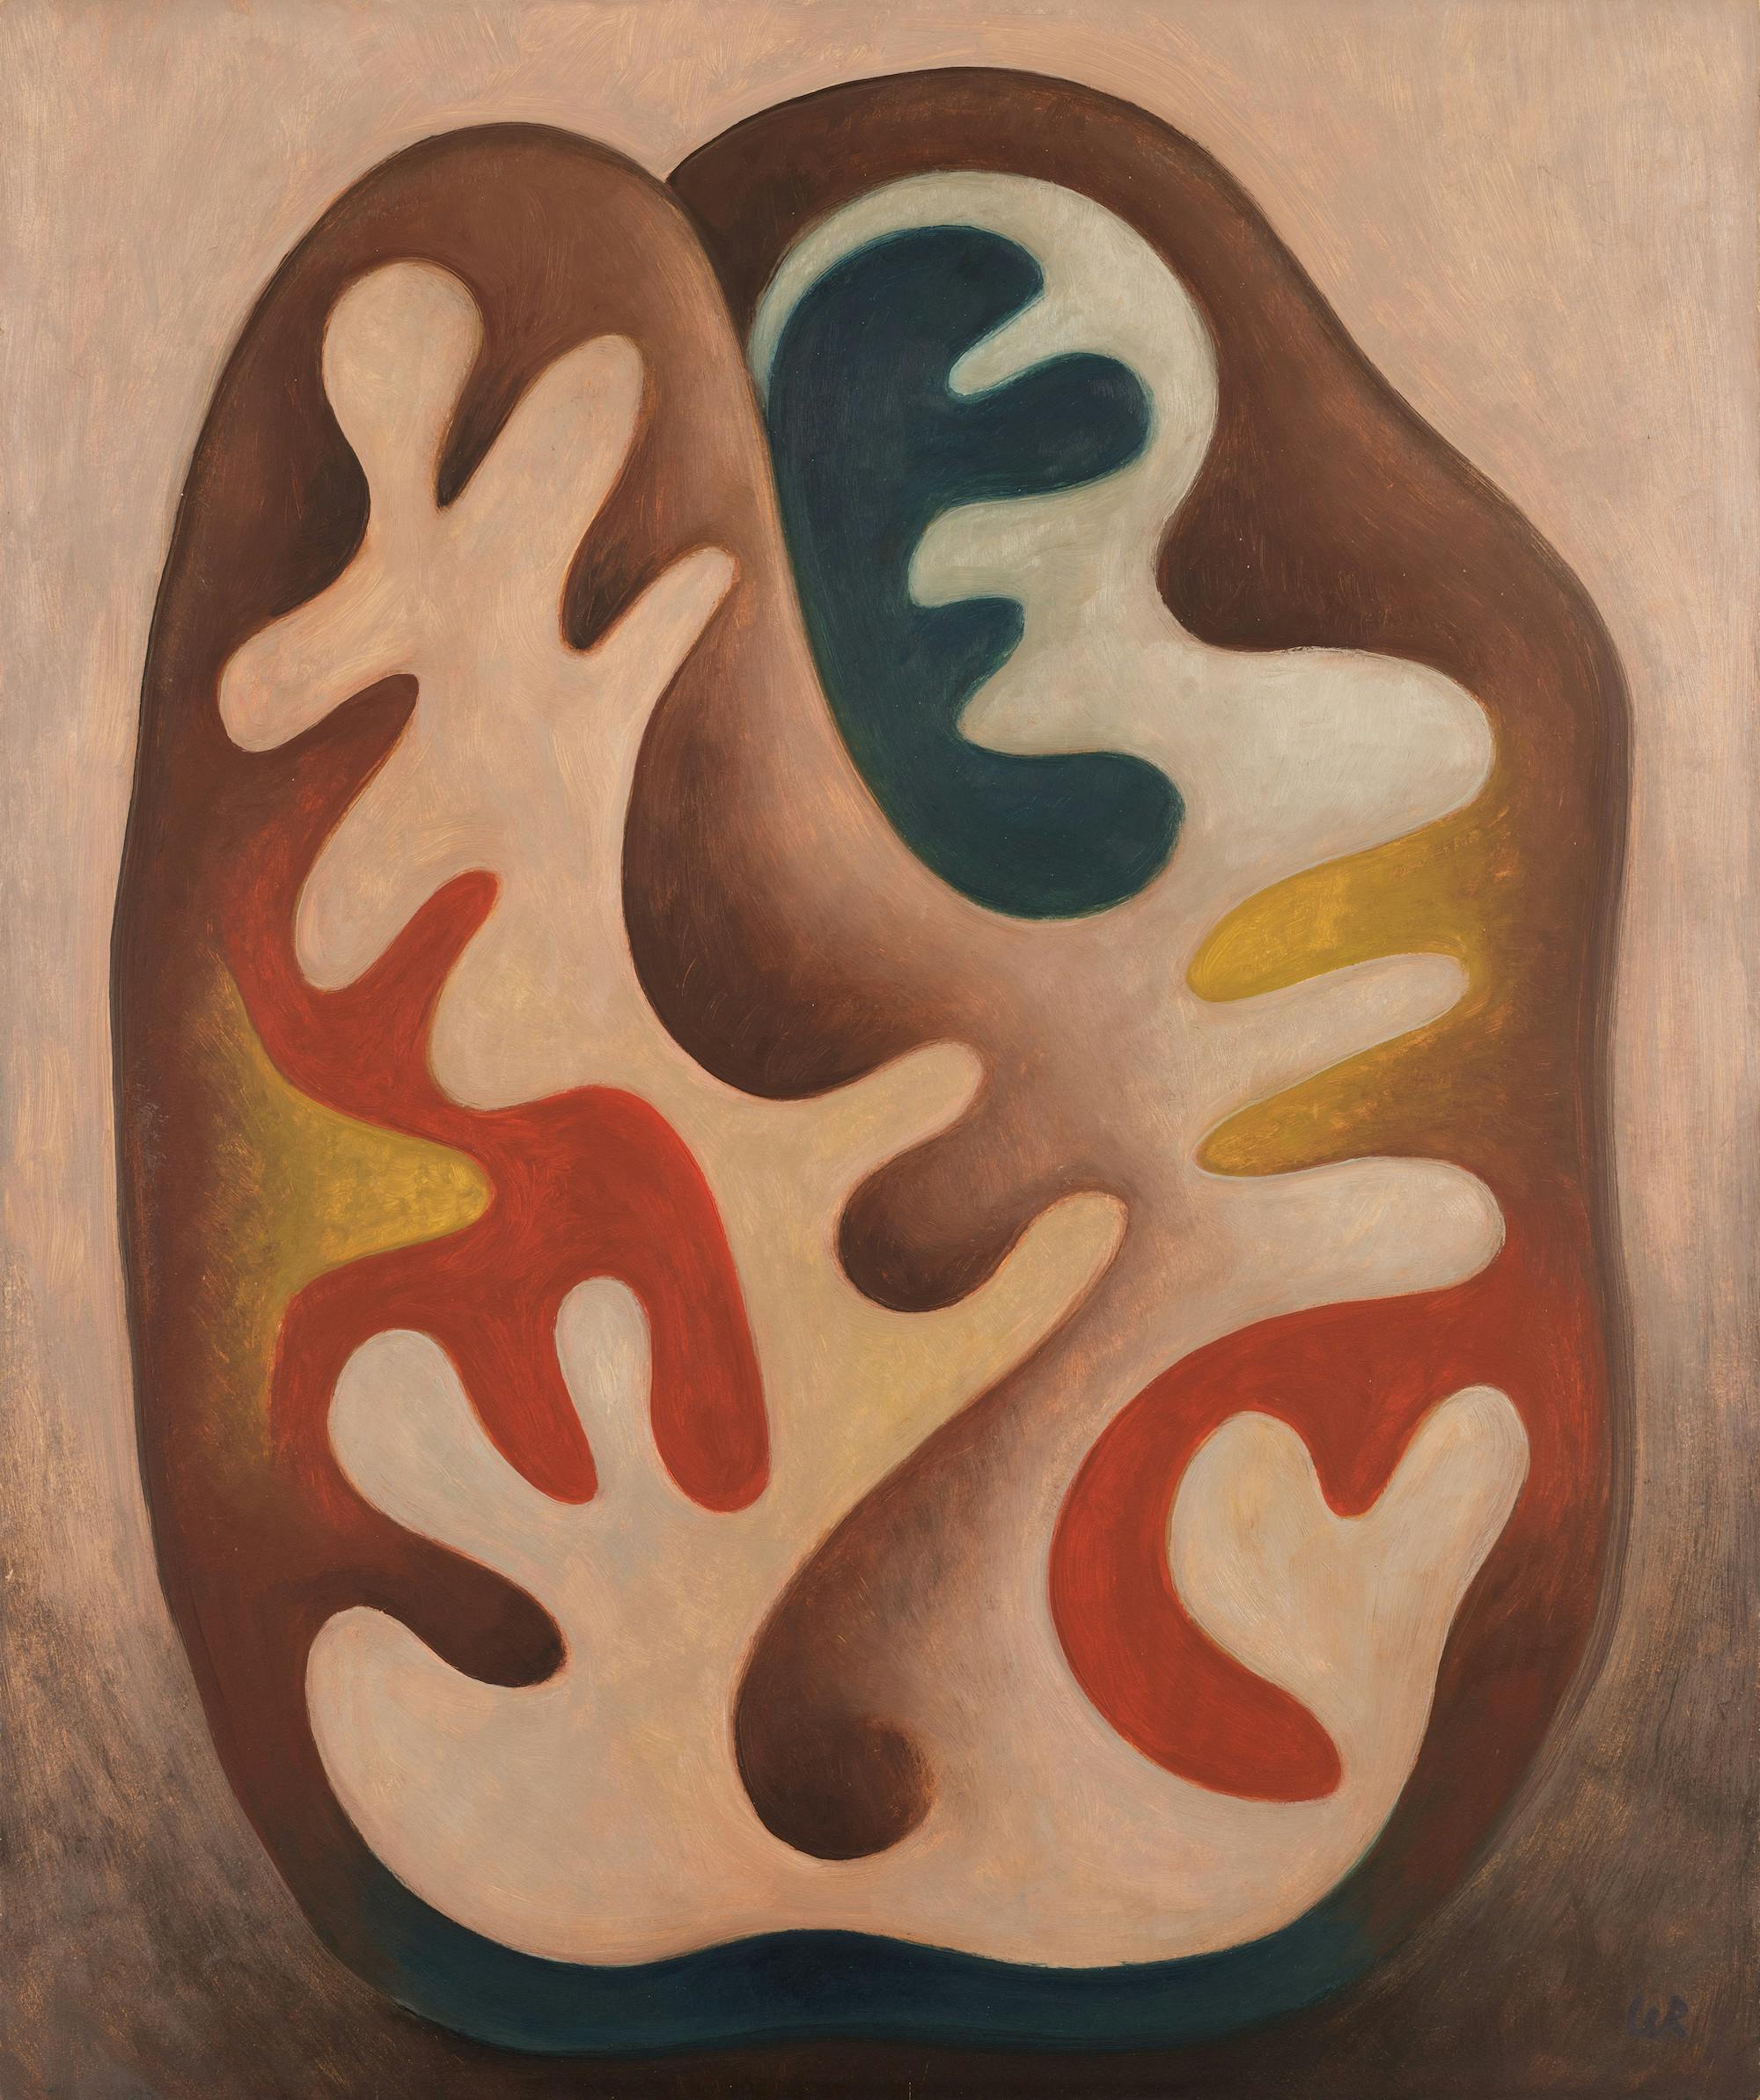 Gemälde eines abstrakten Gebildes aus runden Formen in verschiedenen Farben, die ineinandergreifen. 